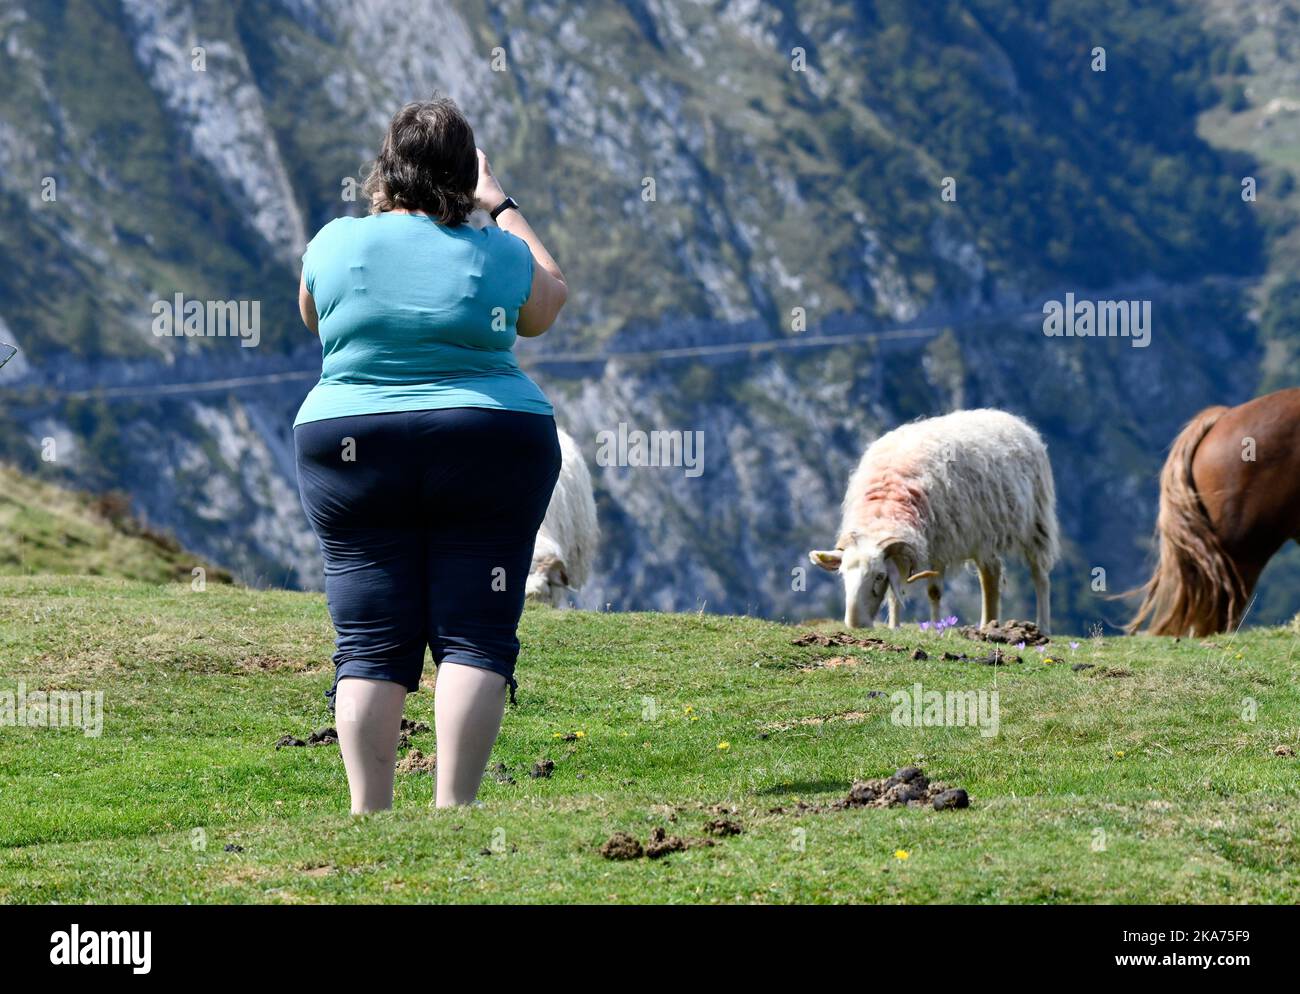 Obesidad obesa persona con sobrepeso Foto de stock